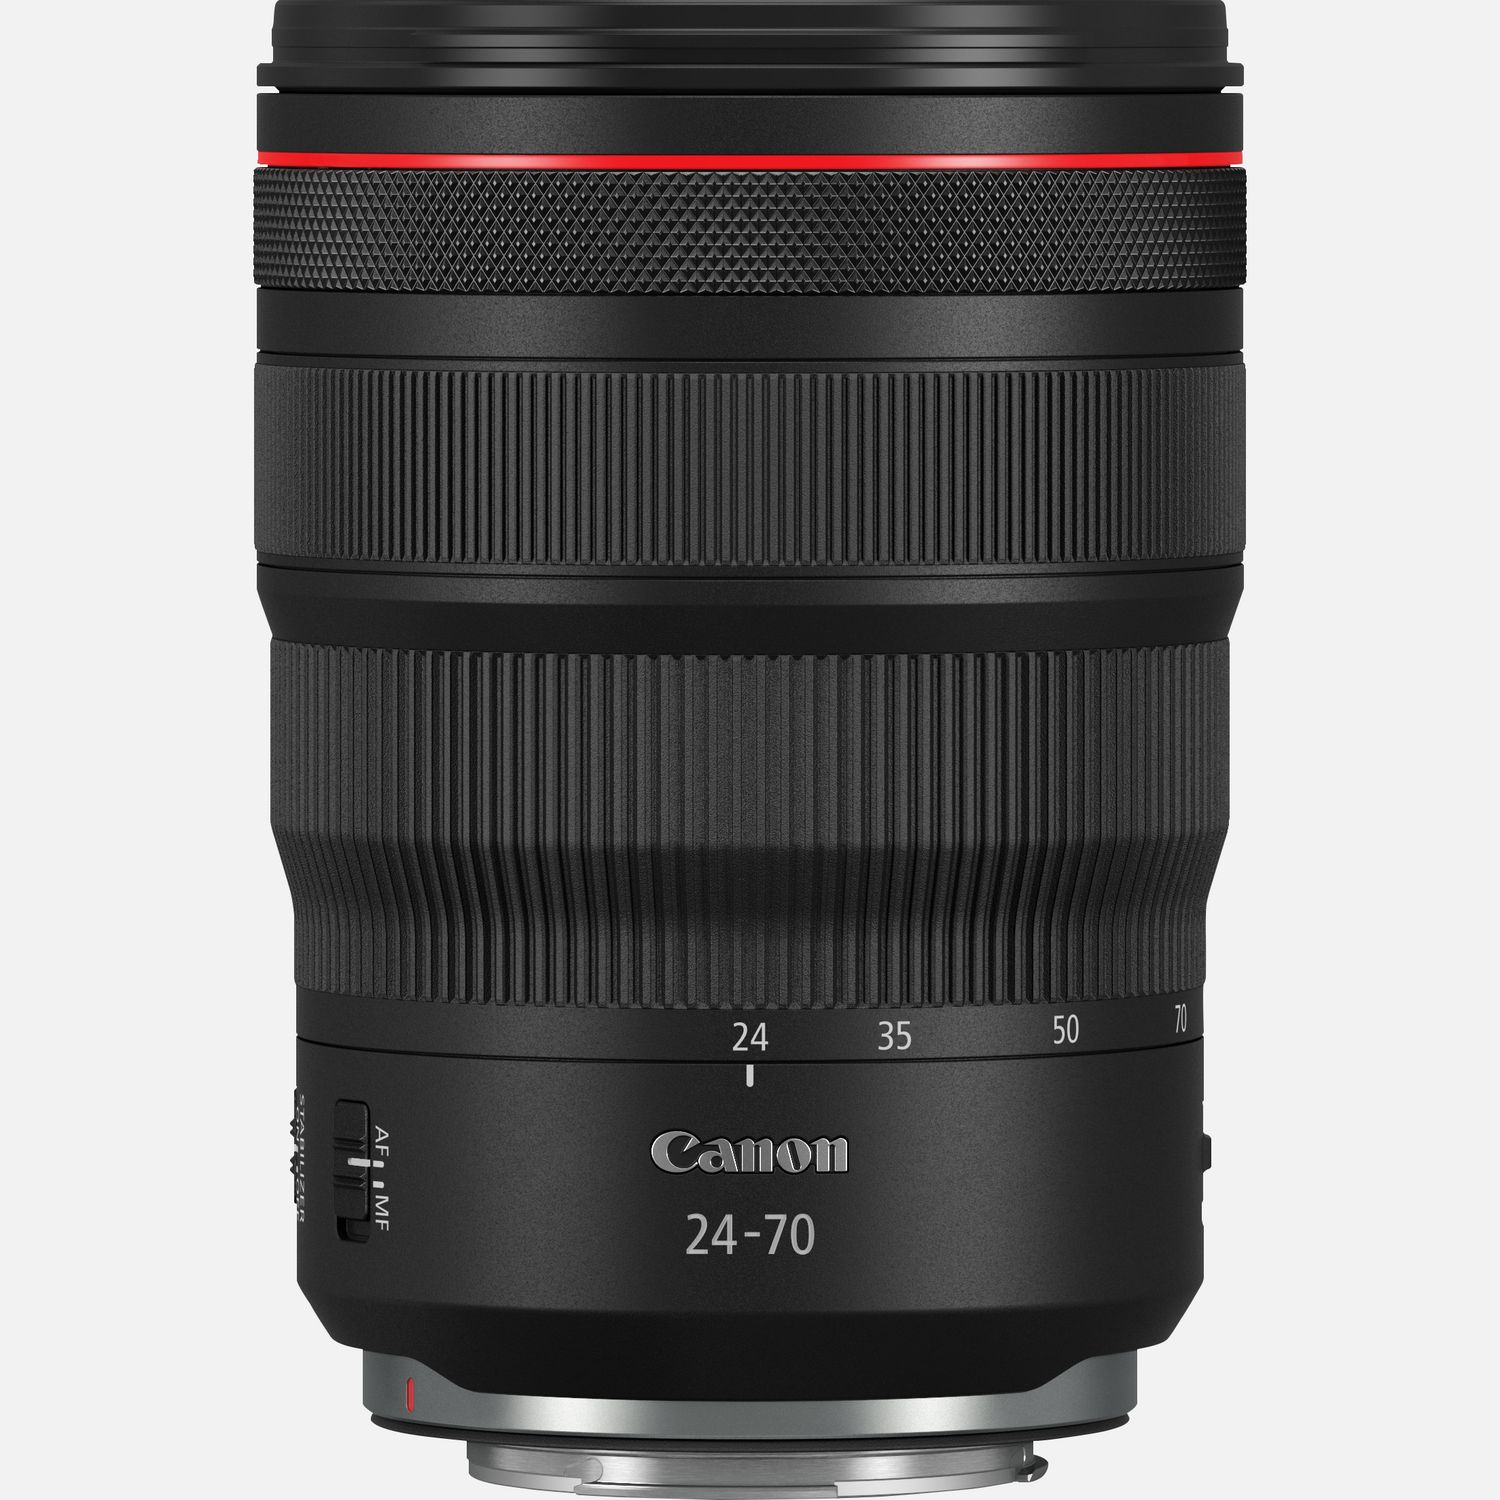 Compra Objetivo RF 24-70mm F2.8L IS USM de Canon — Tienda Canon Espana